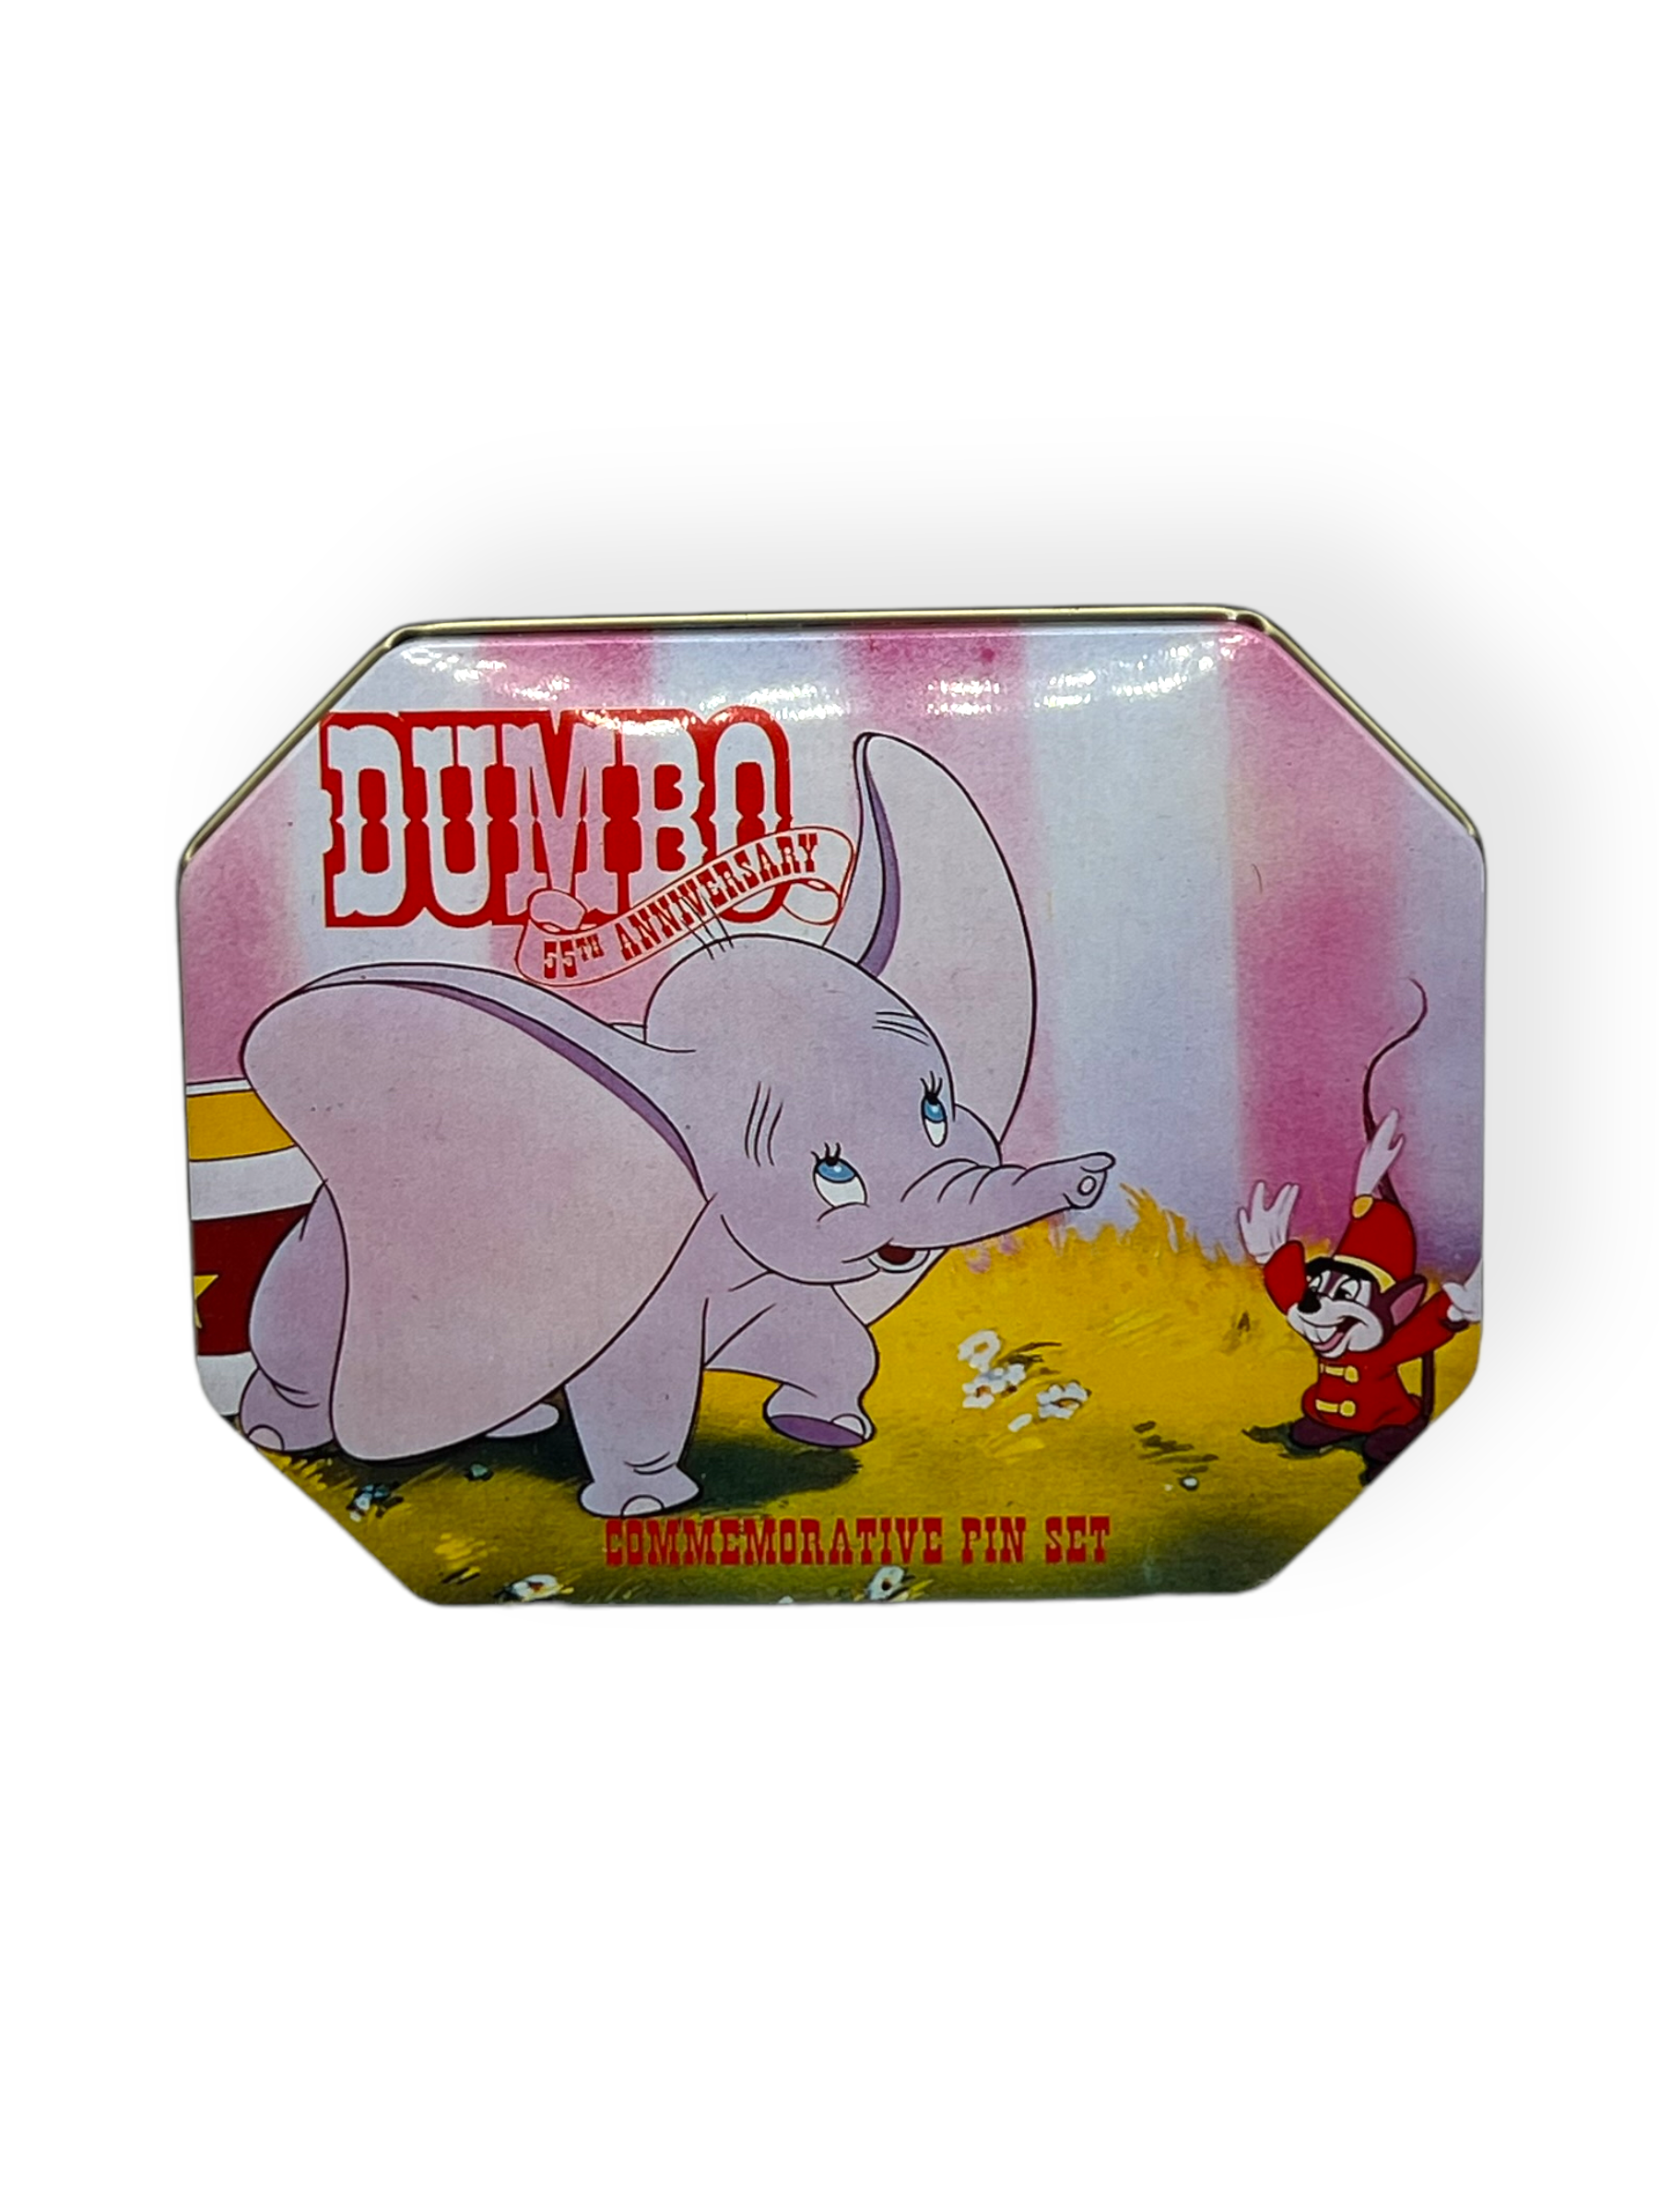 Dumbo Commemorative Tin Set